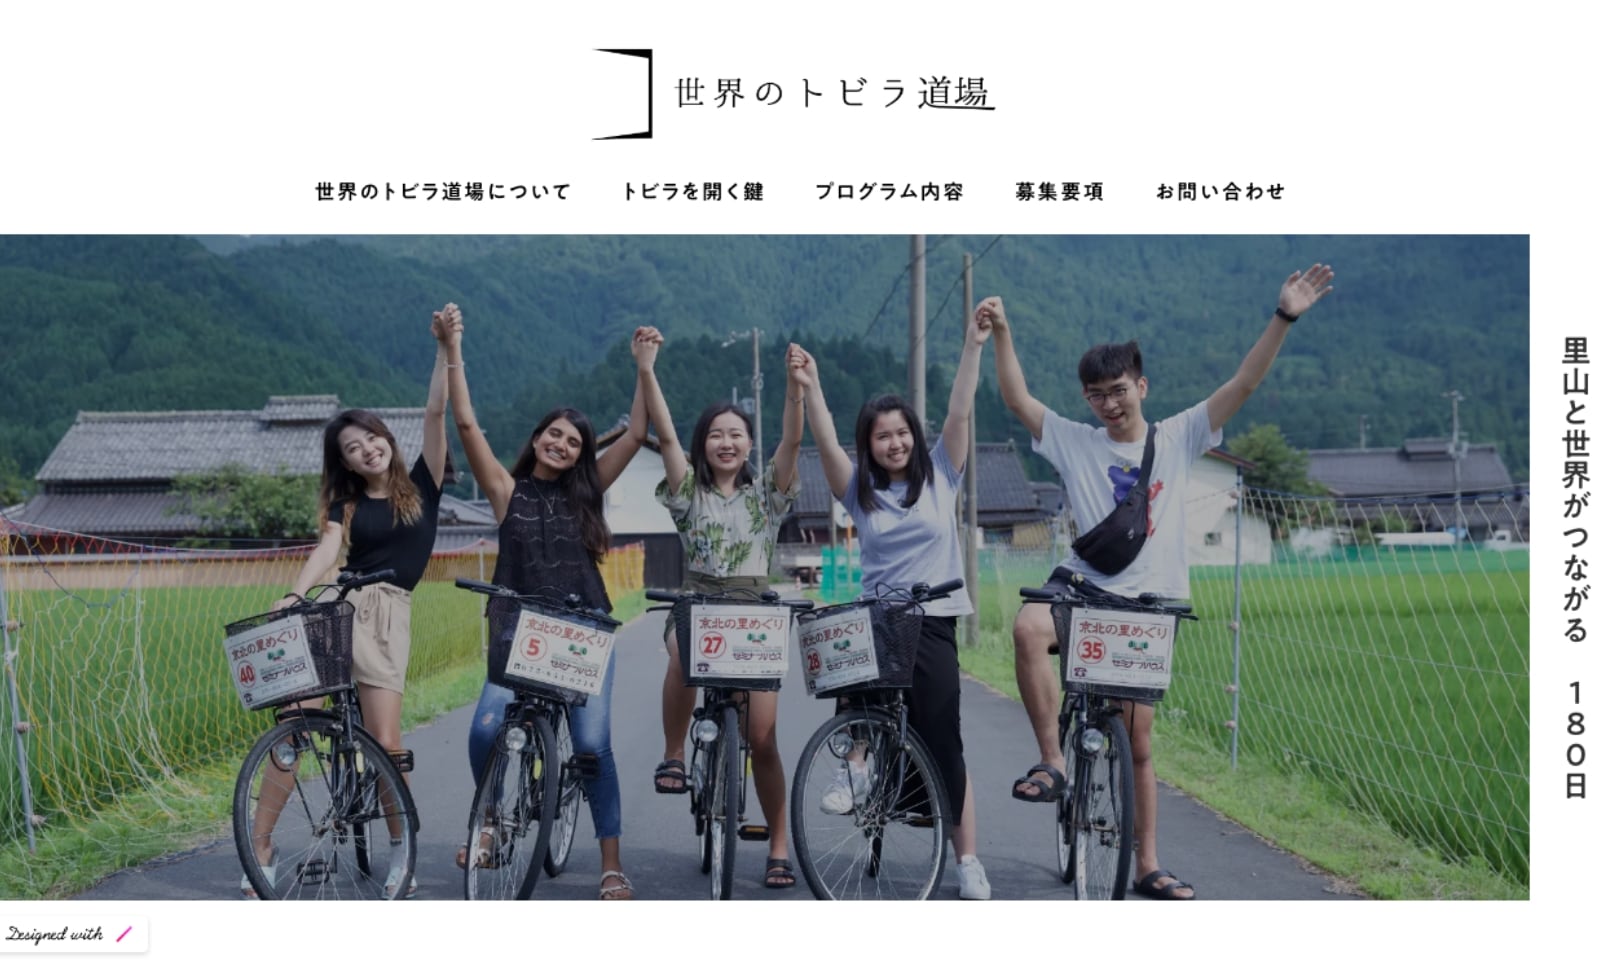 世界のトビラ道場ウェブサイトのトップ画面。京北の田園と森に囲まれた風景のなかで、留学生たちが自転車にまたがりながら、つないだ手を掲げているメインビジュアルの右脇に、「里山と世界がつながる180日」という見出しが書かれています。